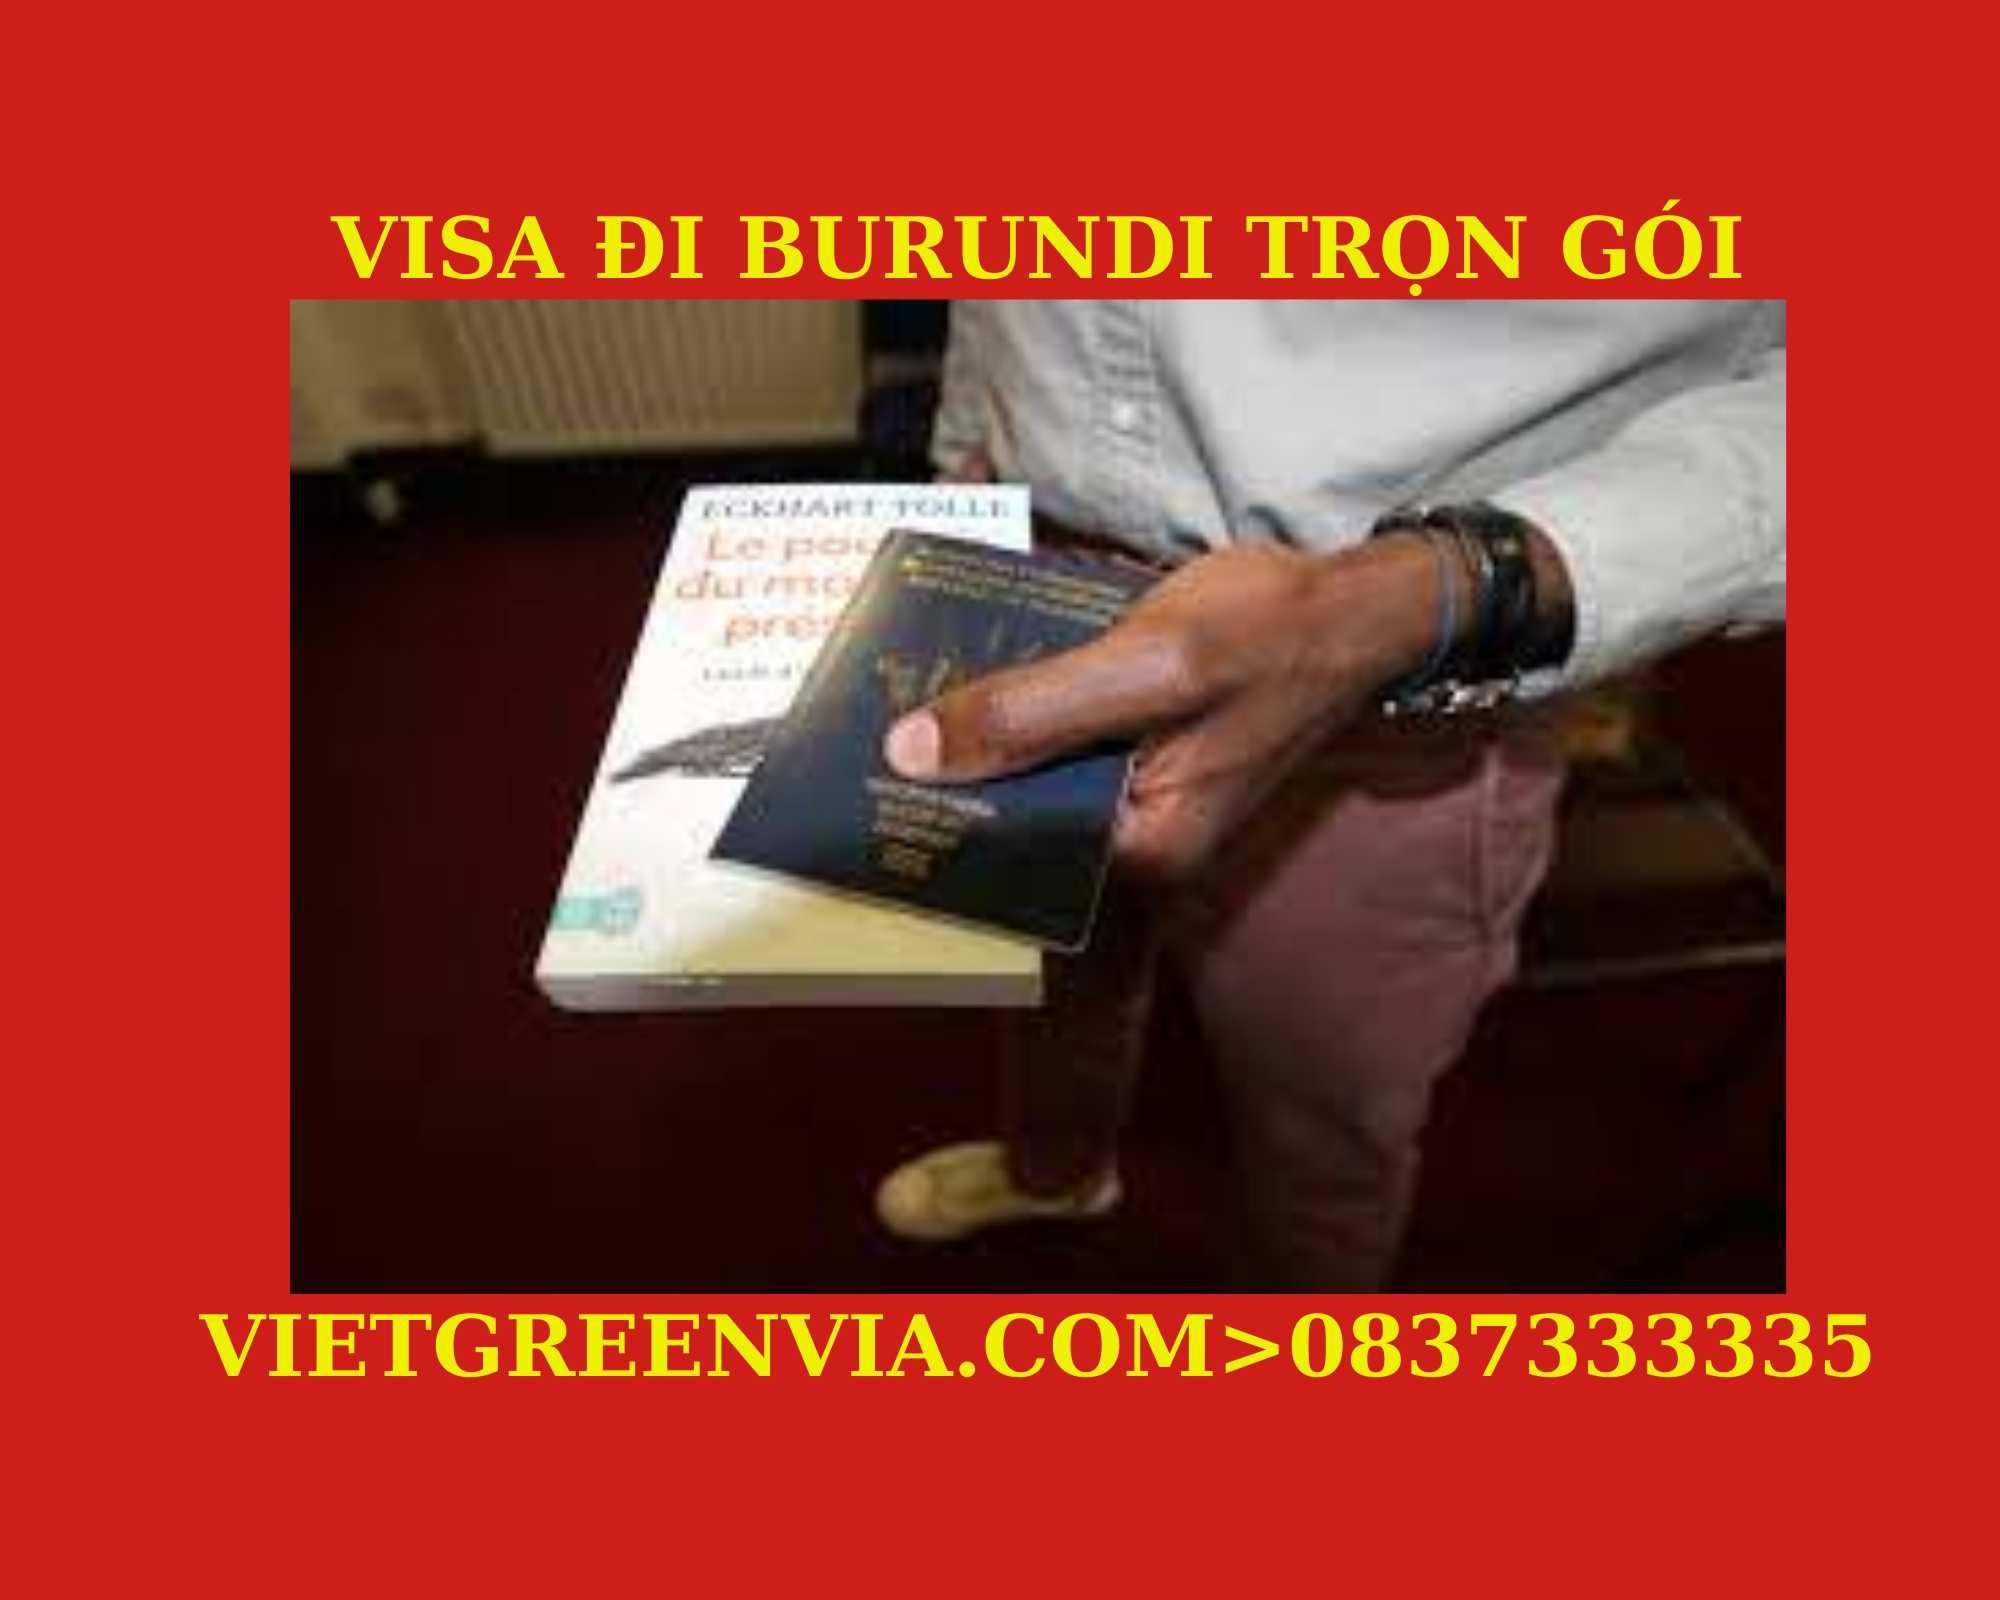 Tư vấn xin Visa Burundi trọn gói tại Hà Nội, Hồ Chí Minh